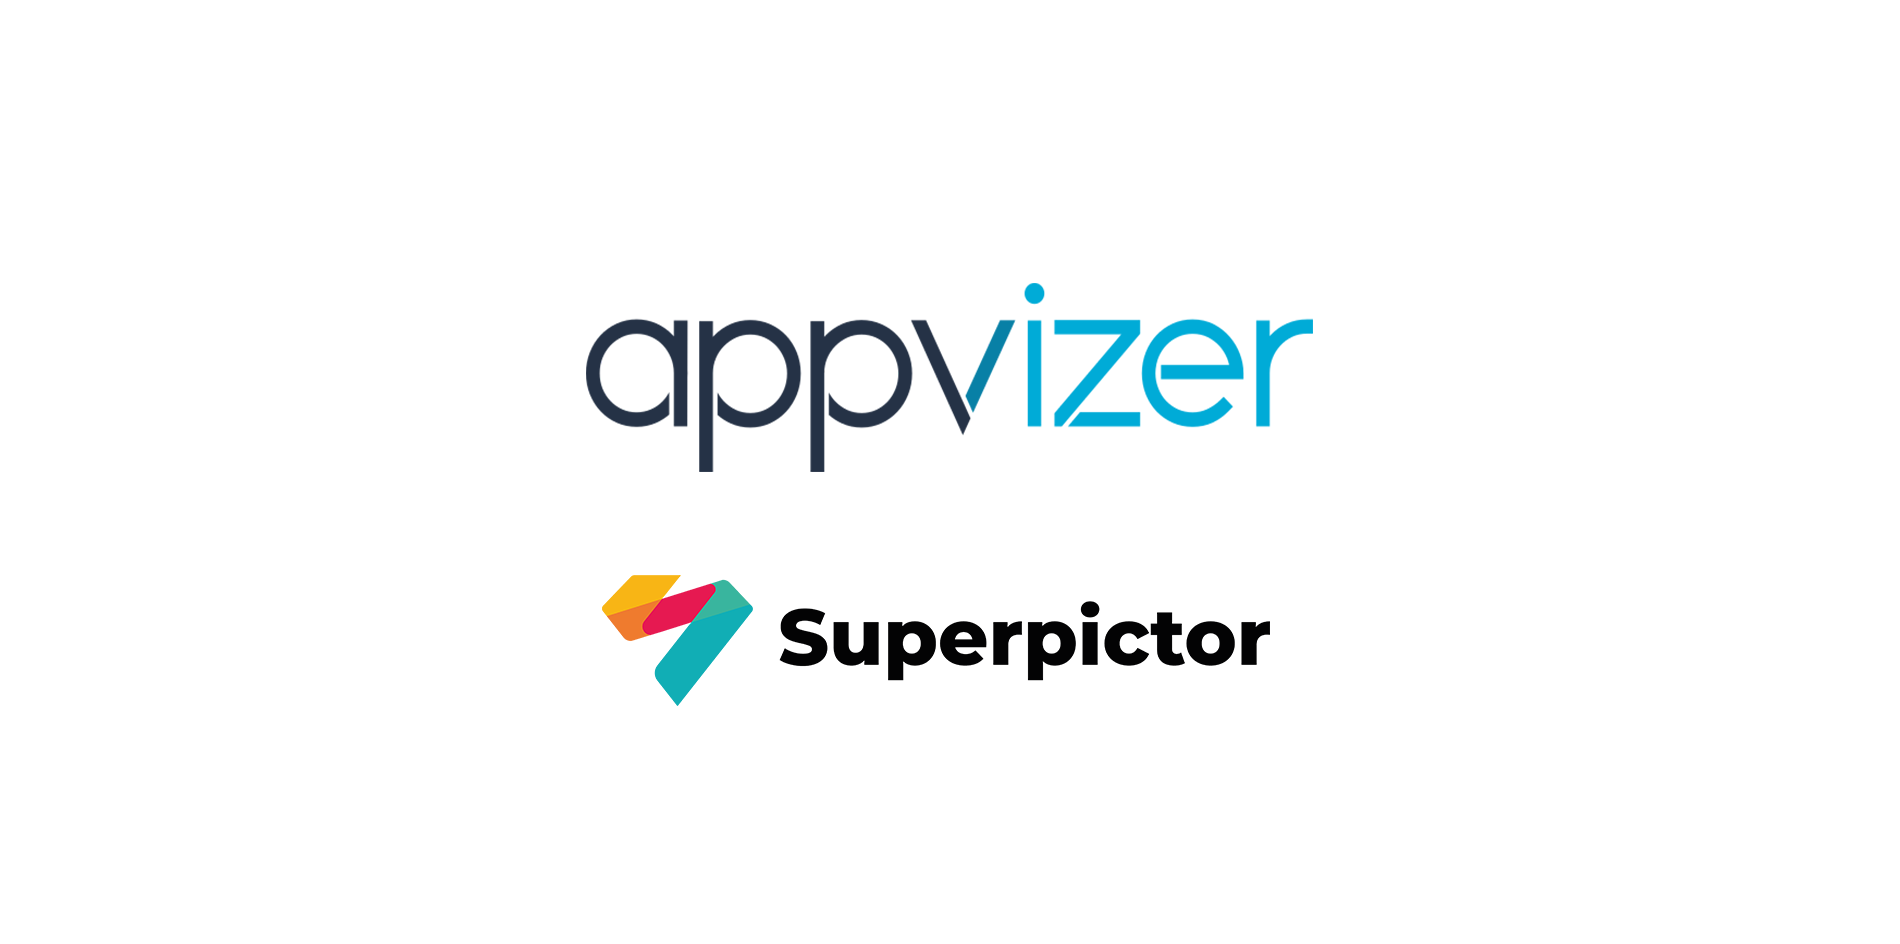 Superpictor sur Appvizer, le comparateur de logiciels en ligne